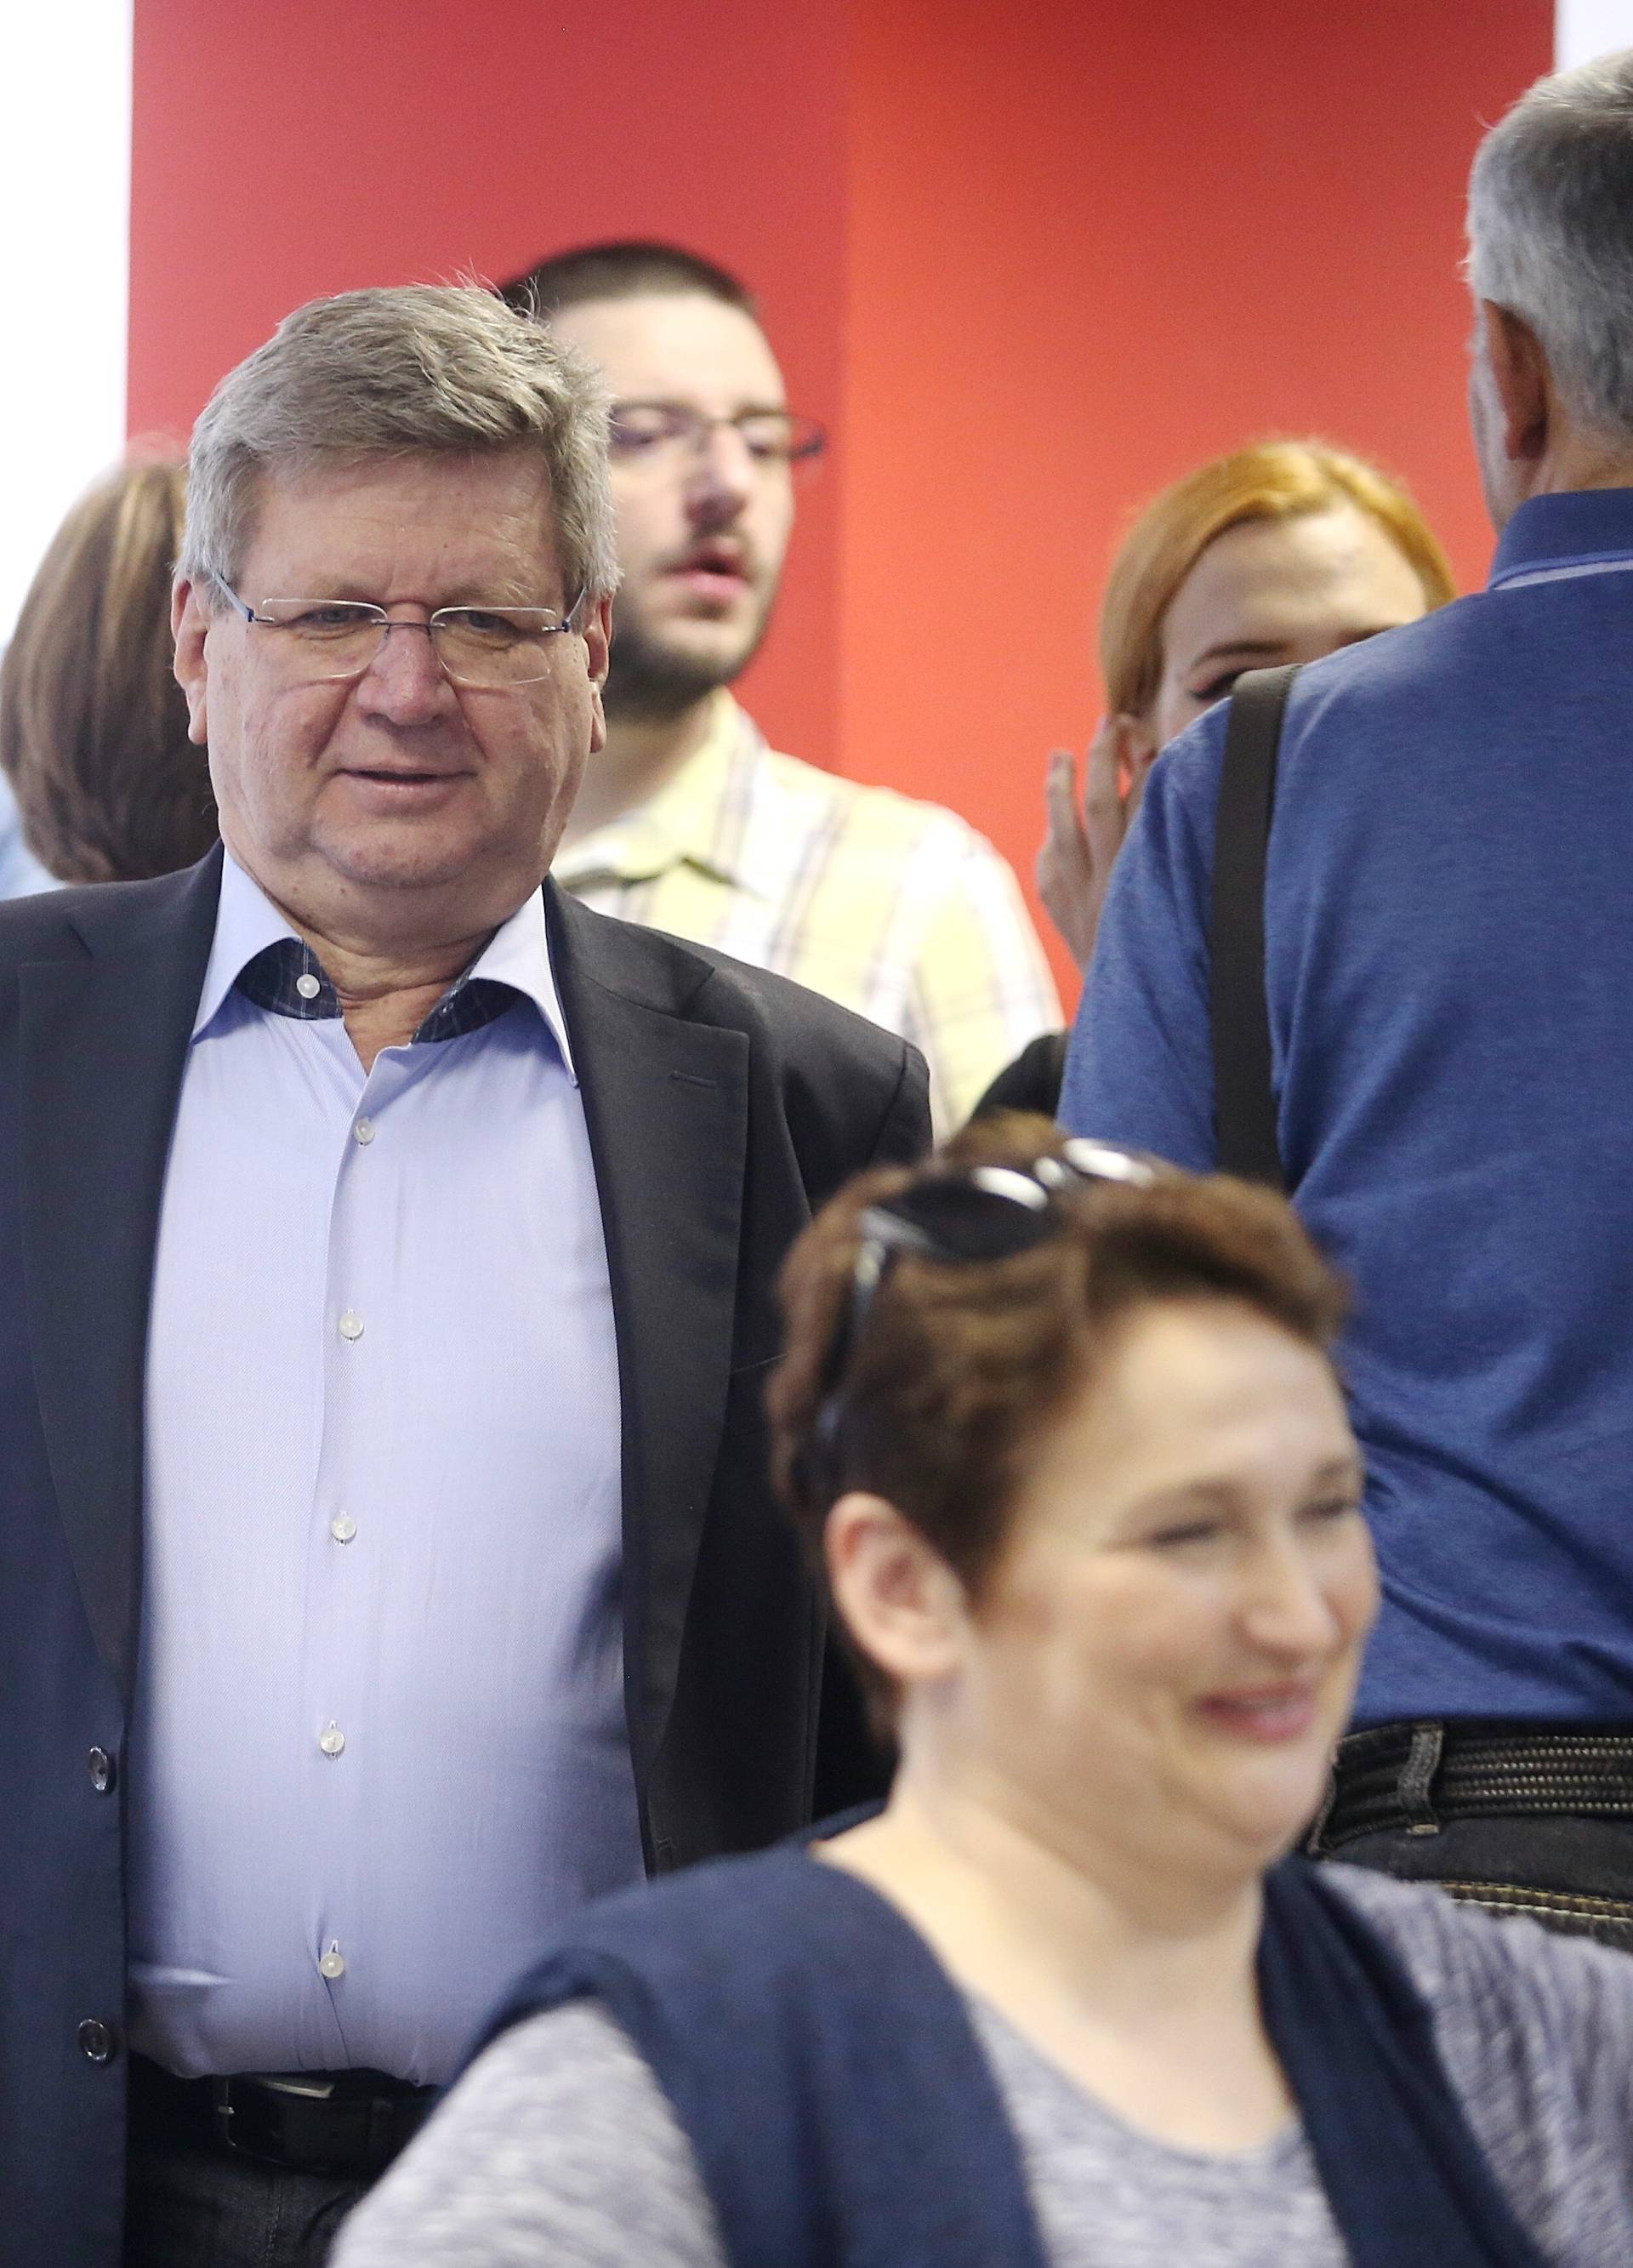 Mrsić službeno objavio svoju kandidaturu za šefa SDP-a